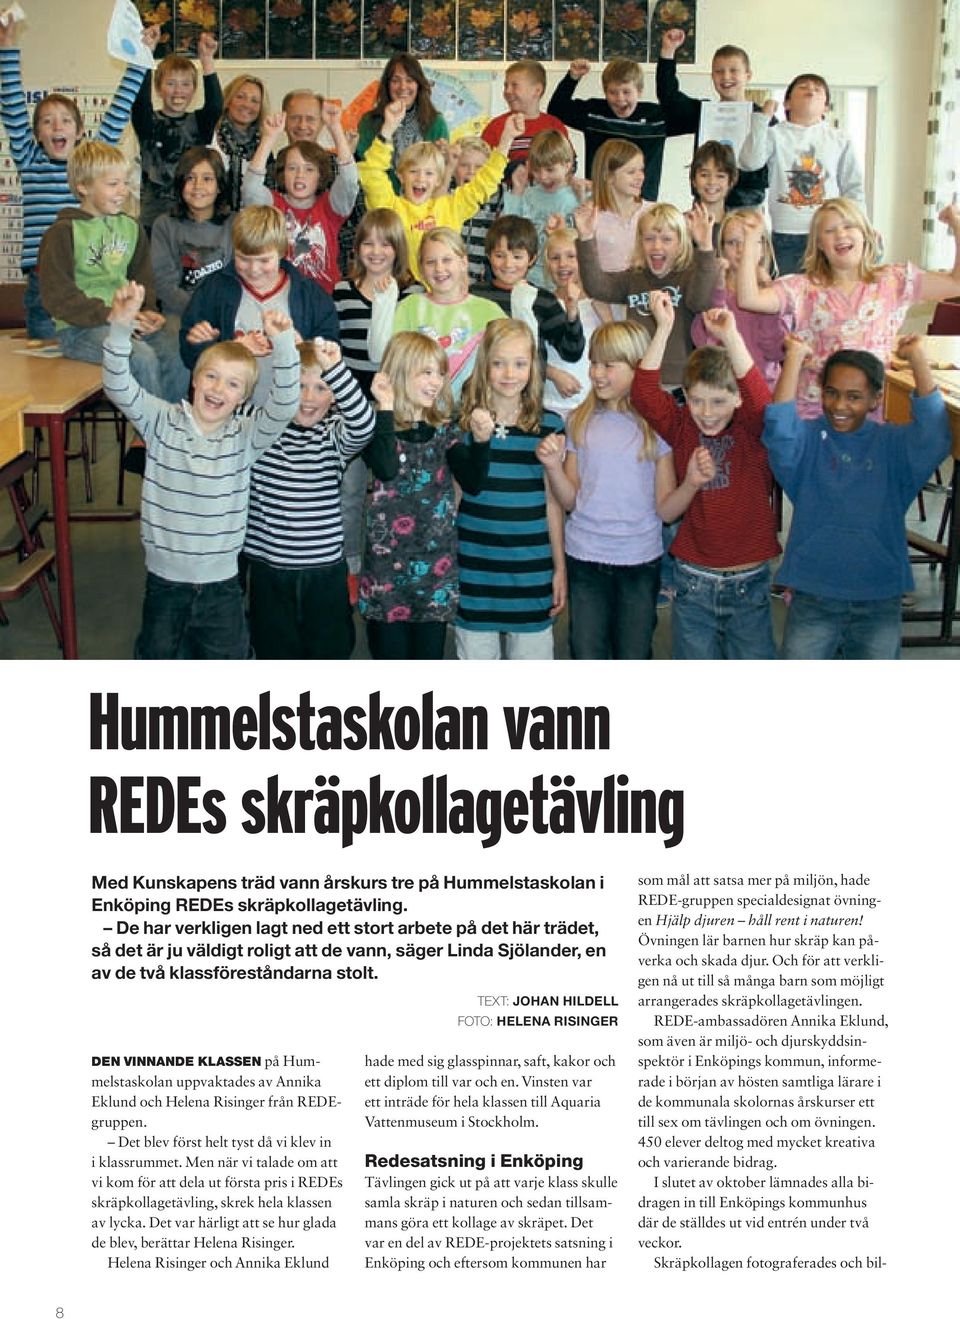 Den vinnande klassen på Hummelstaskolan uppvaktades av Annika Eklund och Helena Risinger från REDEgruppen. Det blev först helt tyst då vi klev in i klassrummet.